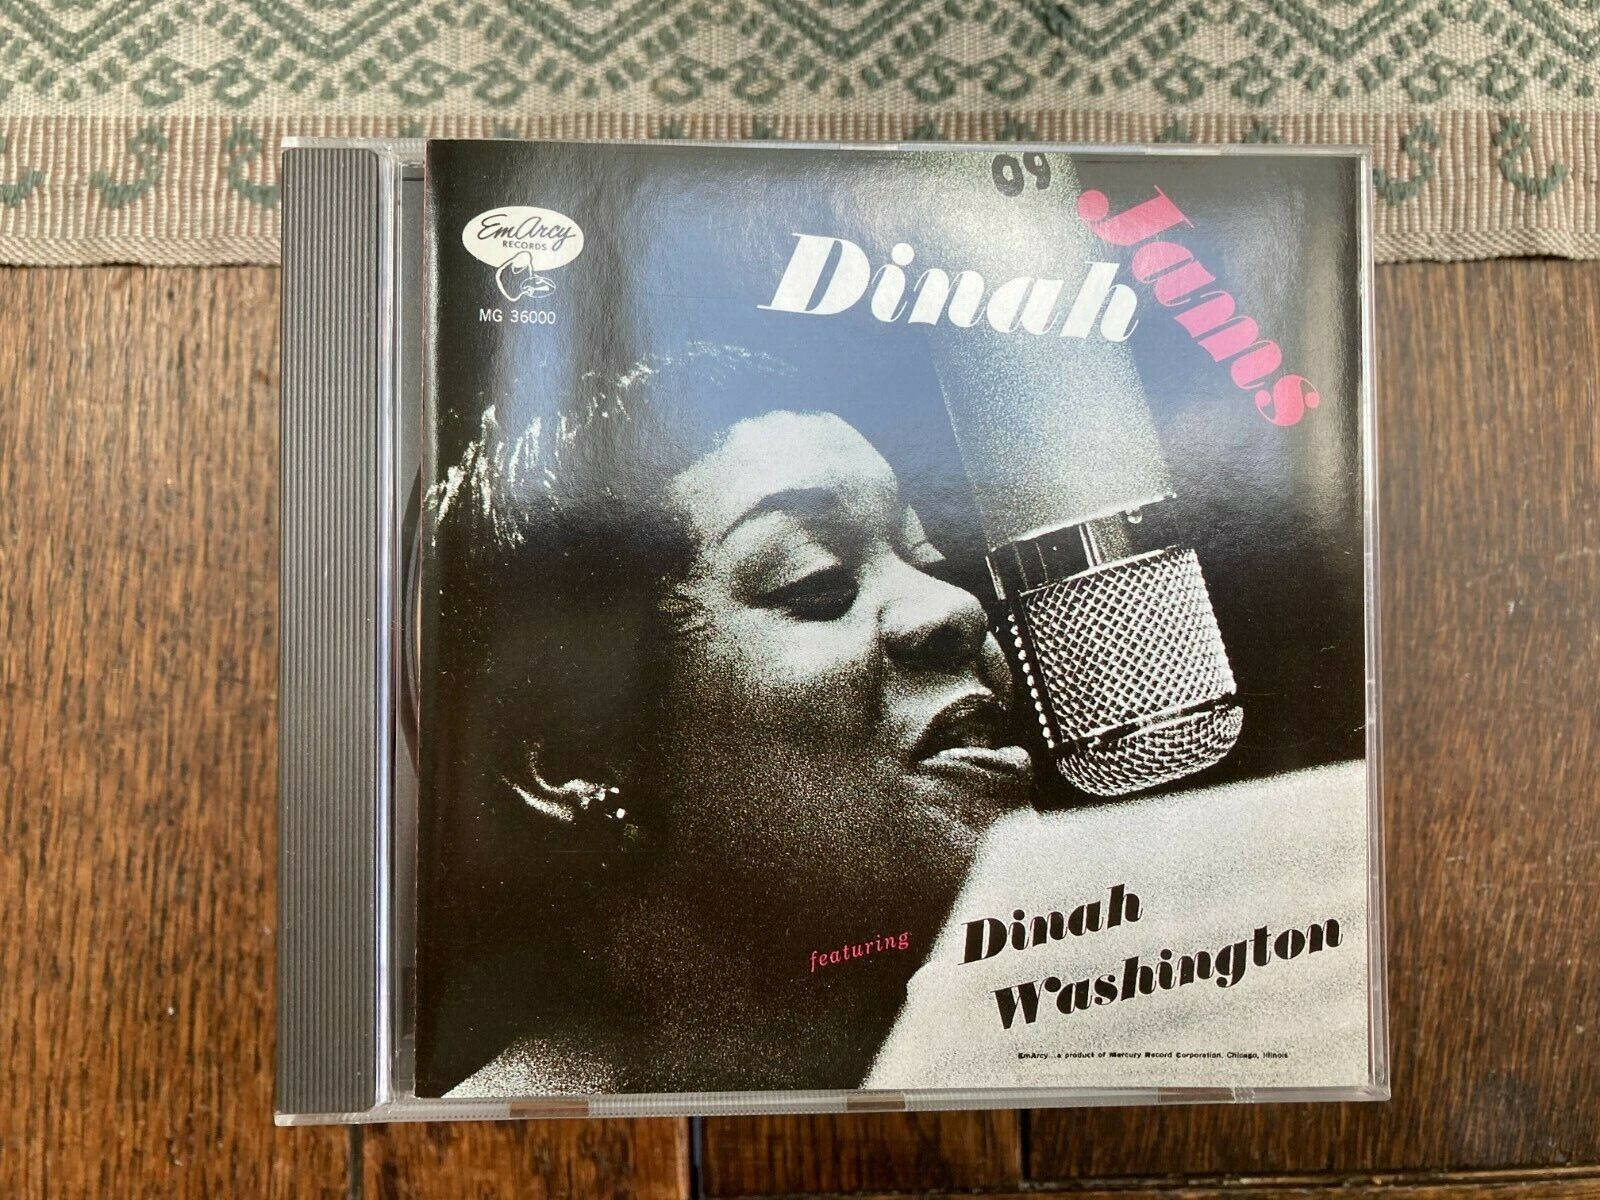 Dinah Washington DVD Top Cover Wallpaper